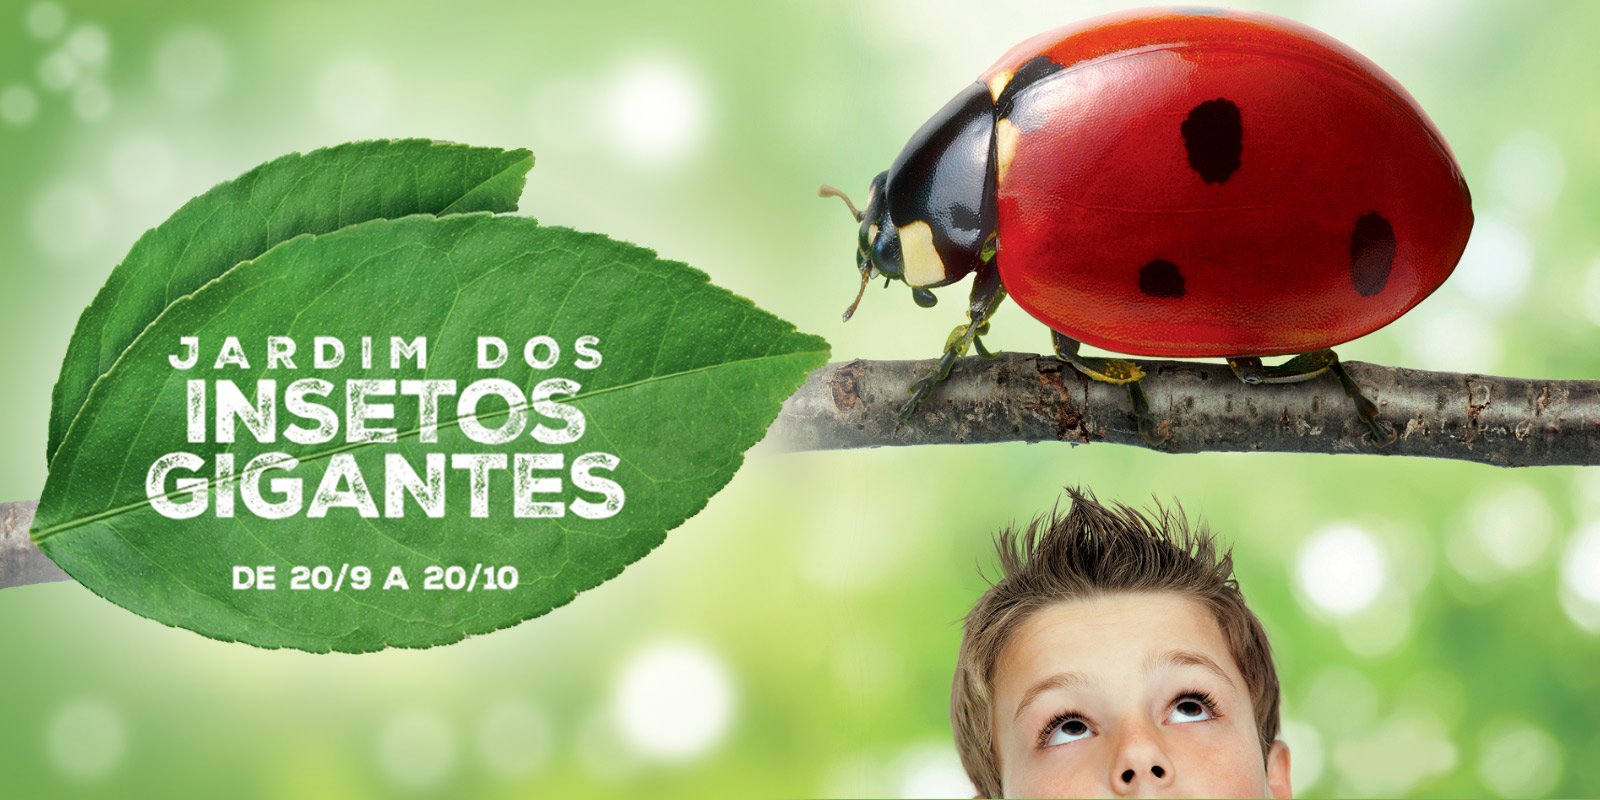 Featured image for “Shopping Vila Olímpia traz insetos gigantes para as crianças”